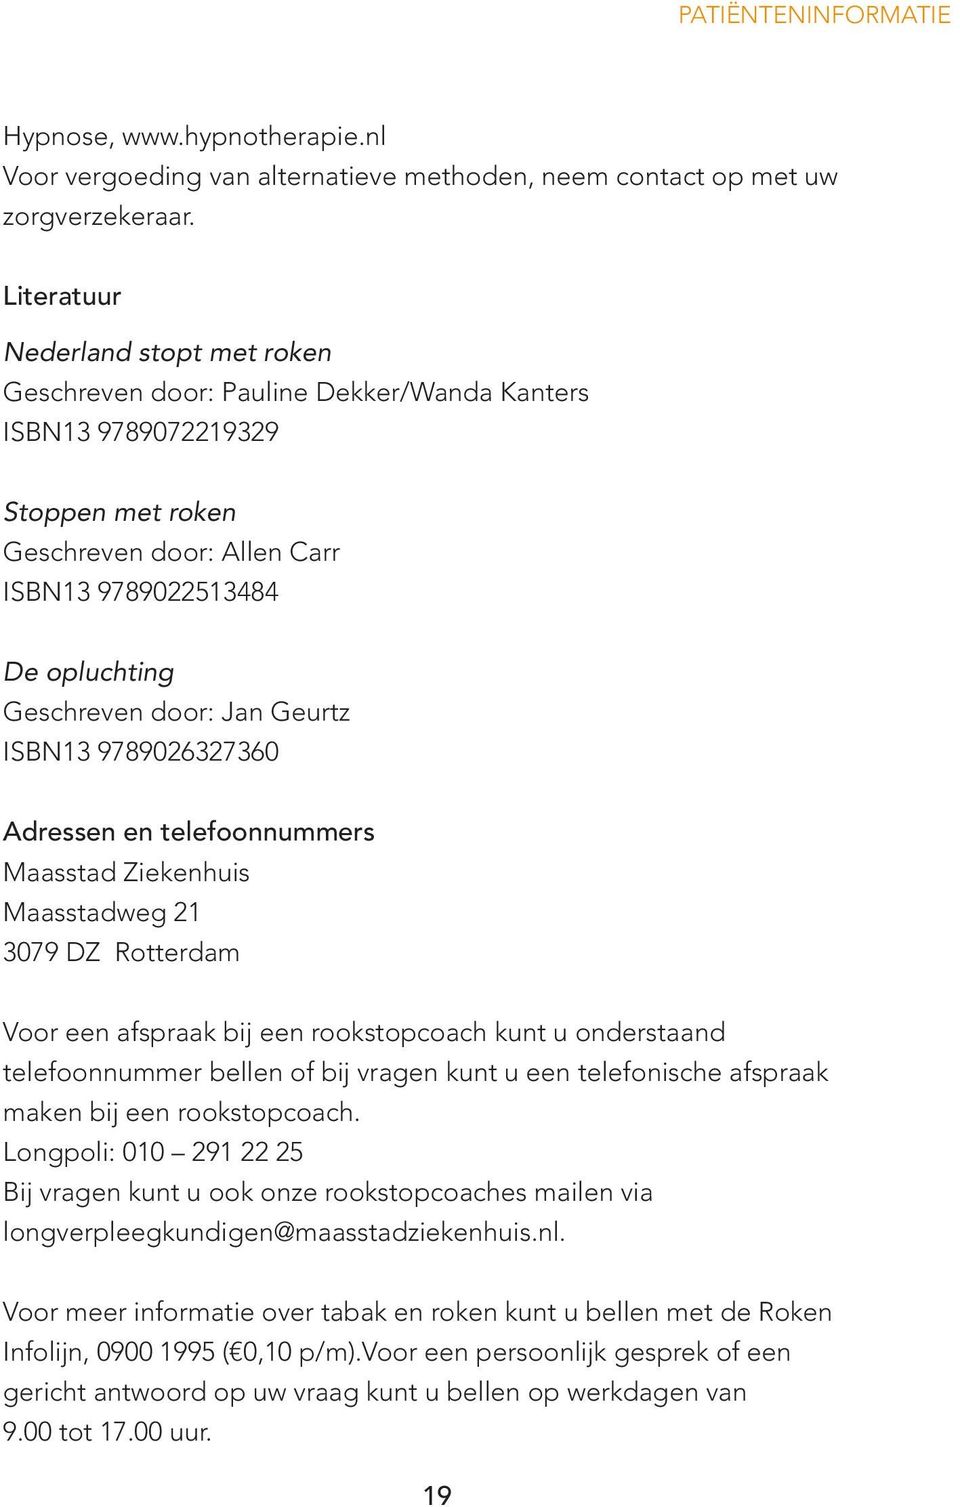 door: Jan Geurtz ISBN13 9789026327360 Adressen en telefoonnummers Maasstad Ziekenhuis Maasstadweg 21 3079 DZ Rotterdam Voor een afspraak bij een rookstopcoach kunt u onderstaand telefoonnummer bellen